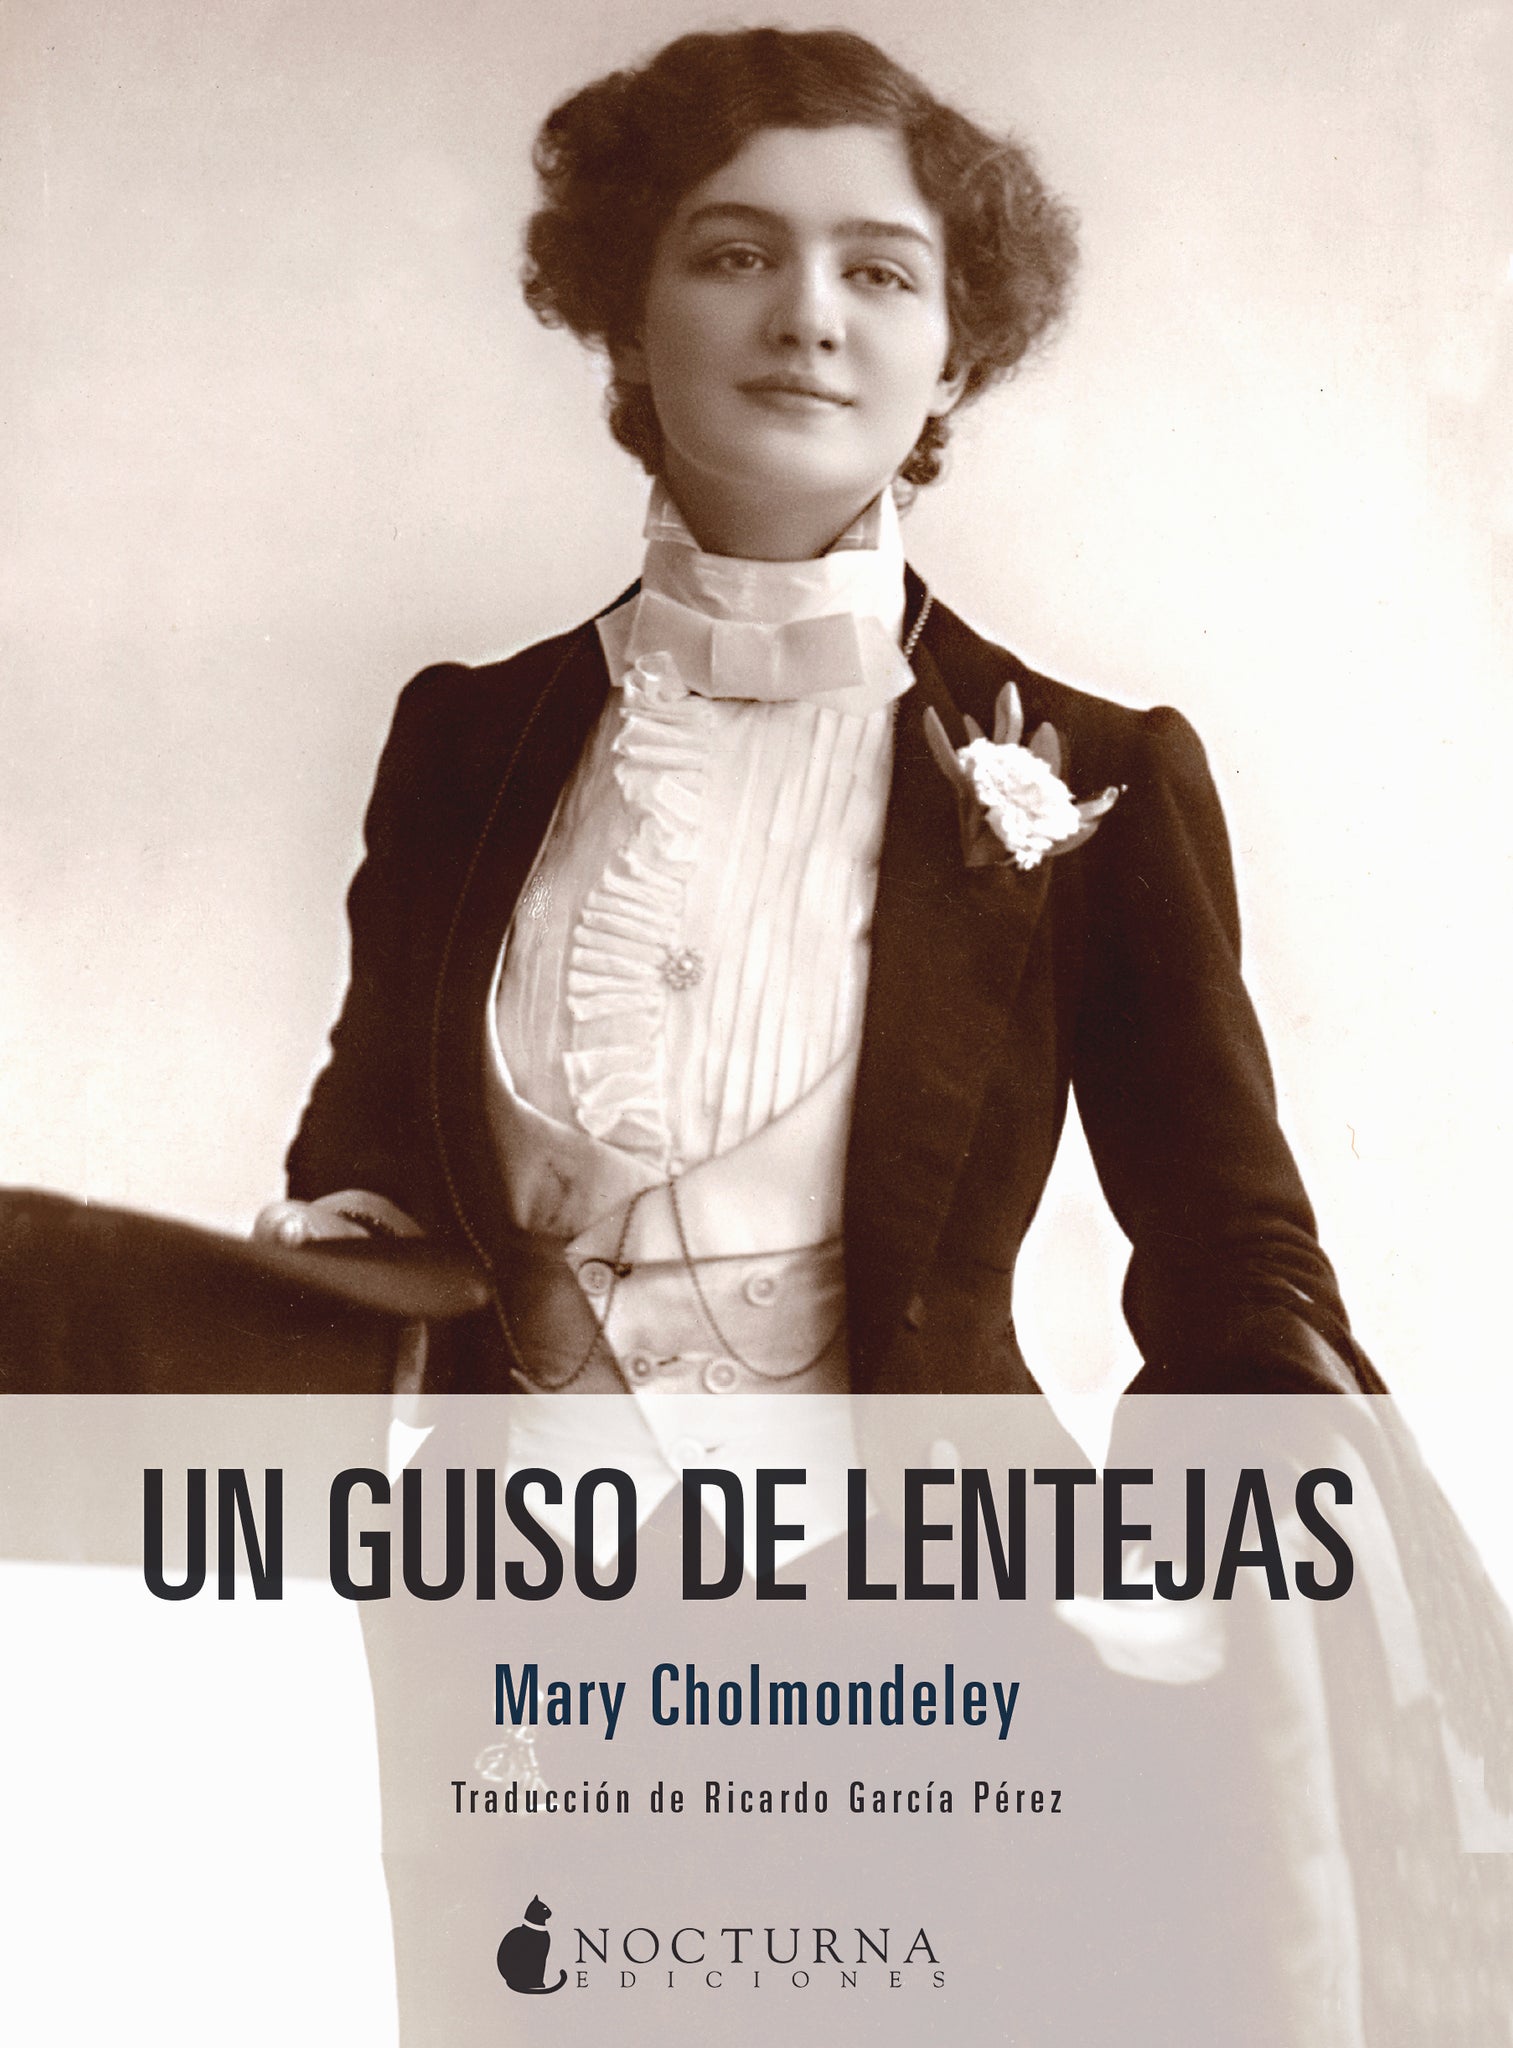 Un guiso de lentejas (Mary Cholmondeley)